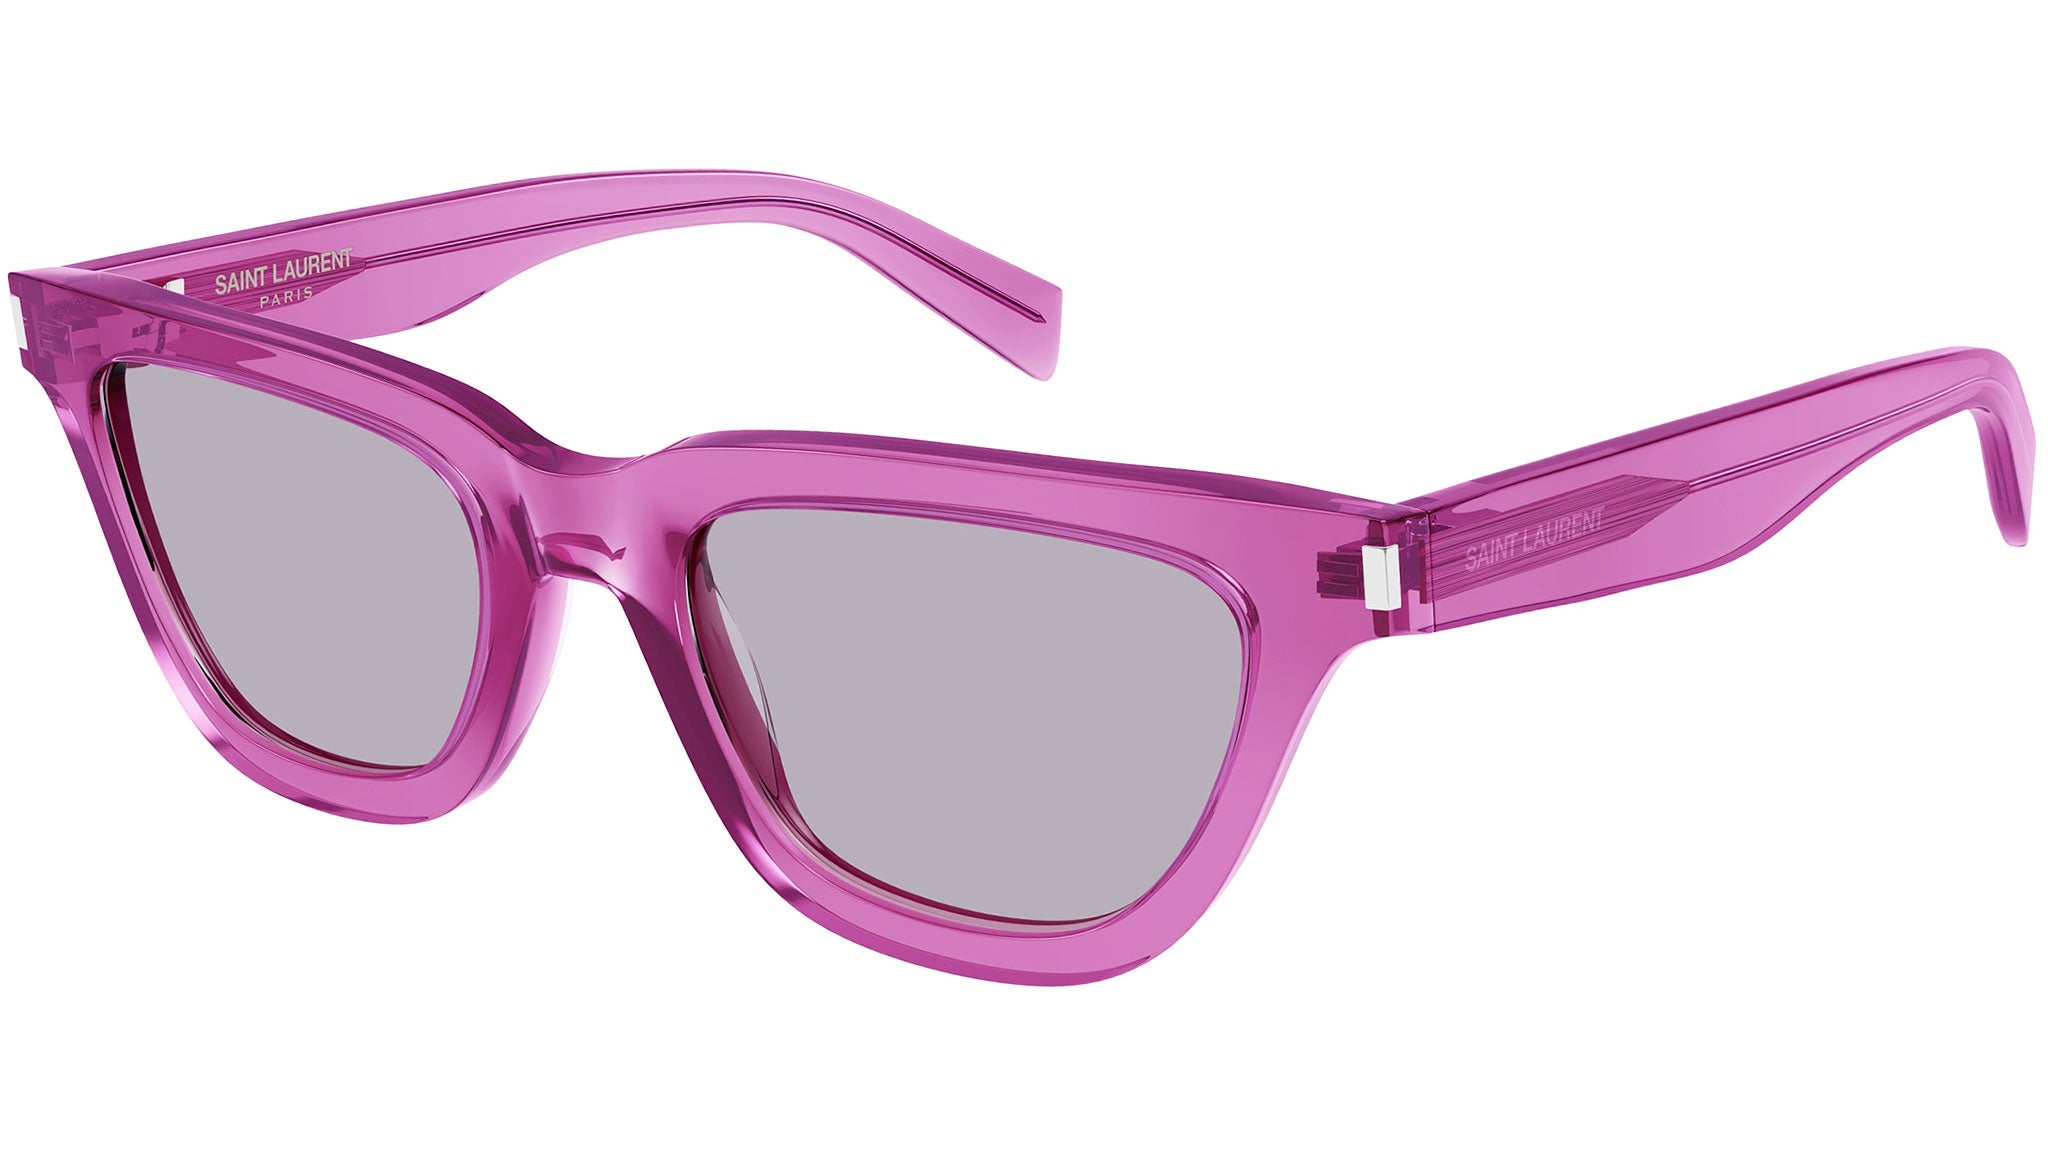 Saint Laurent Sulpice Sl 462 women Sunglasses online sale